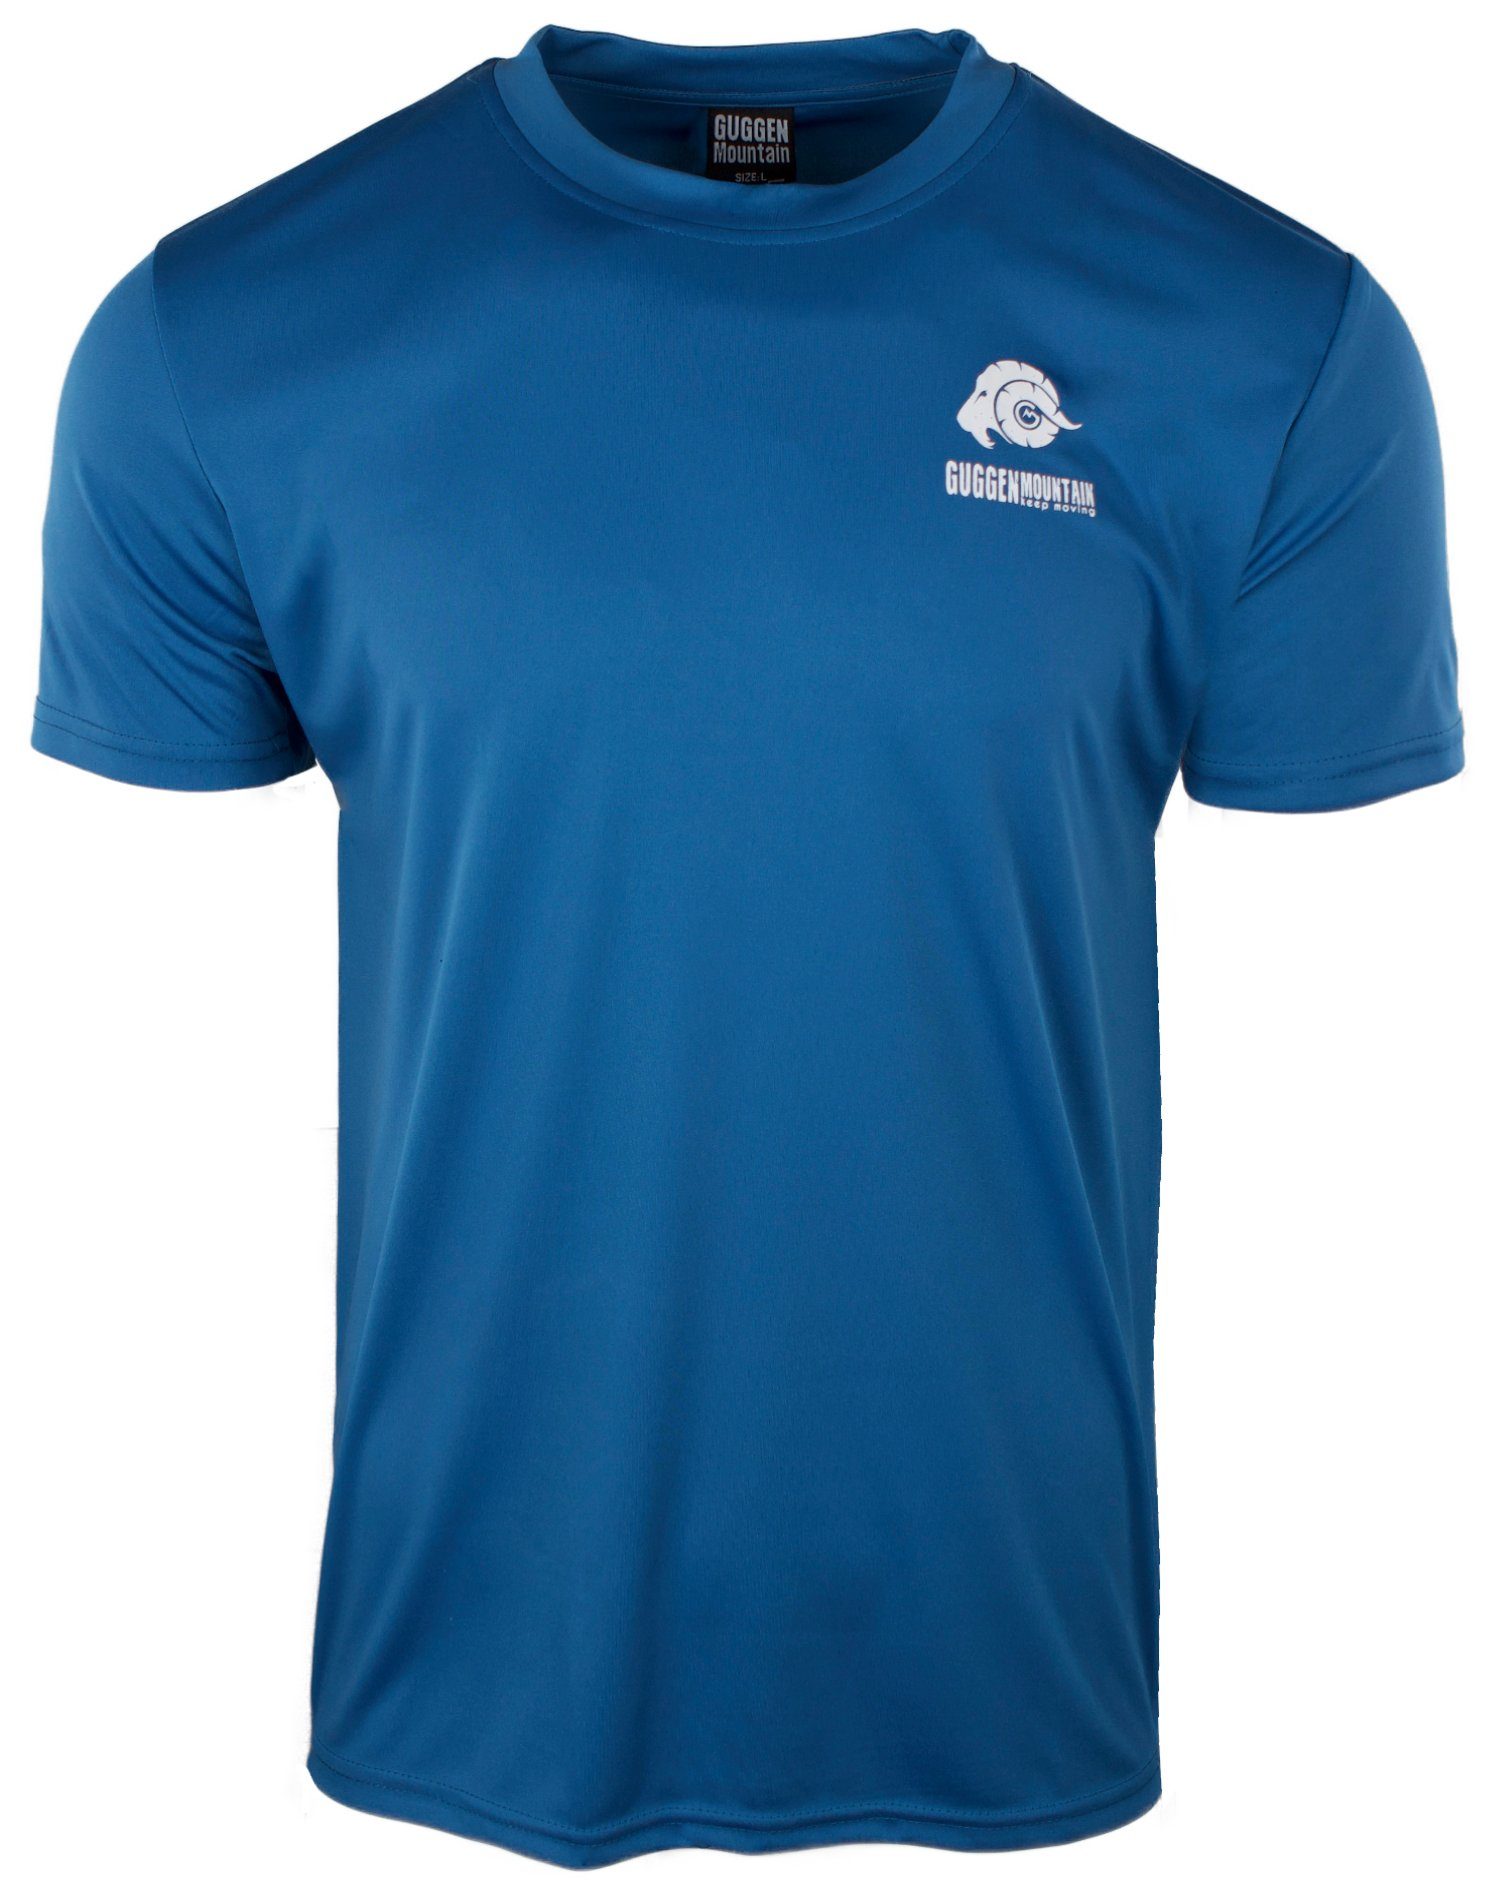 Unifarben, T-Shirt Blau-OHNE-Logo Funktionsshirt Sportshirt Herren Kurzarm in Mountain Logo Funktionsshirt FW04 GUGGEN